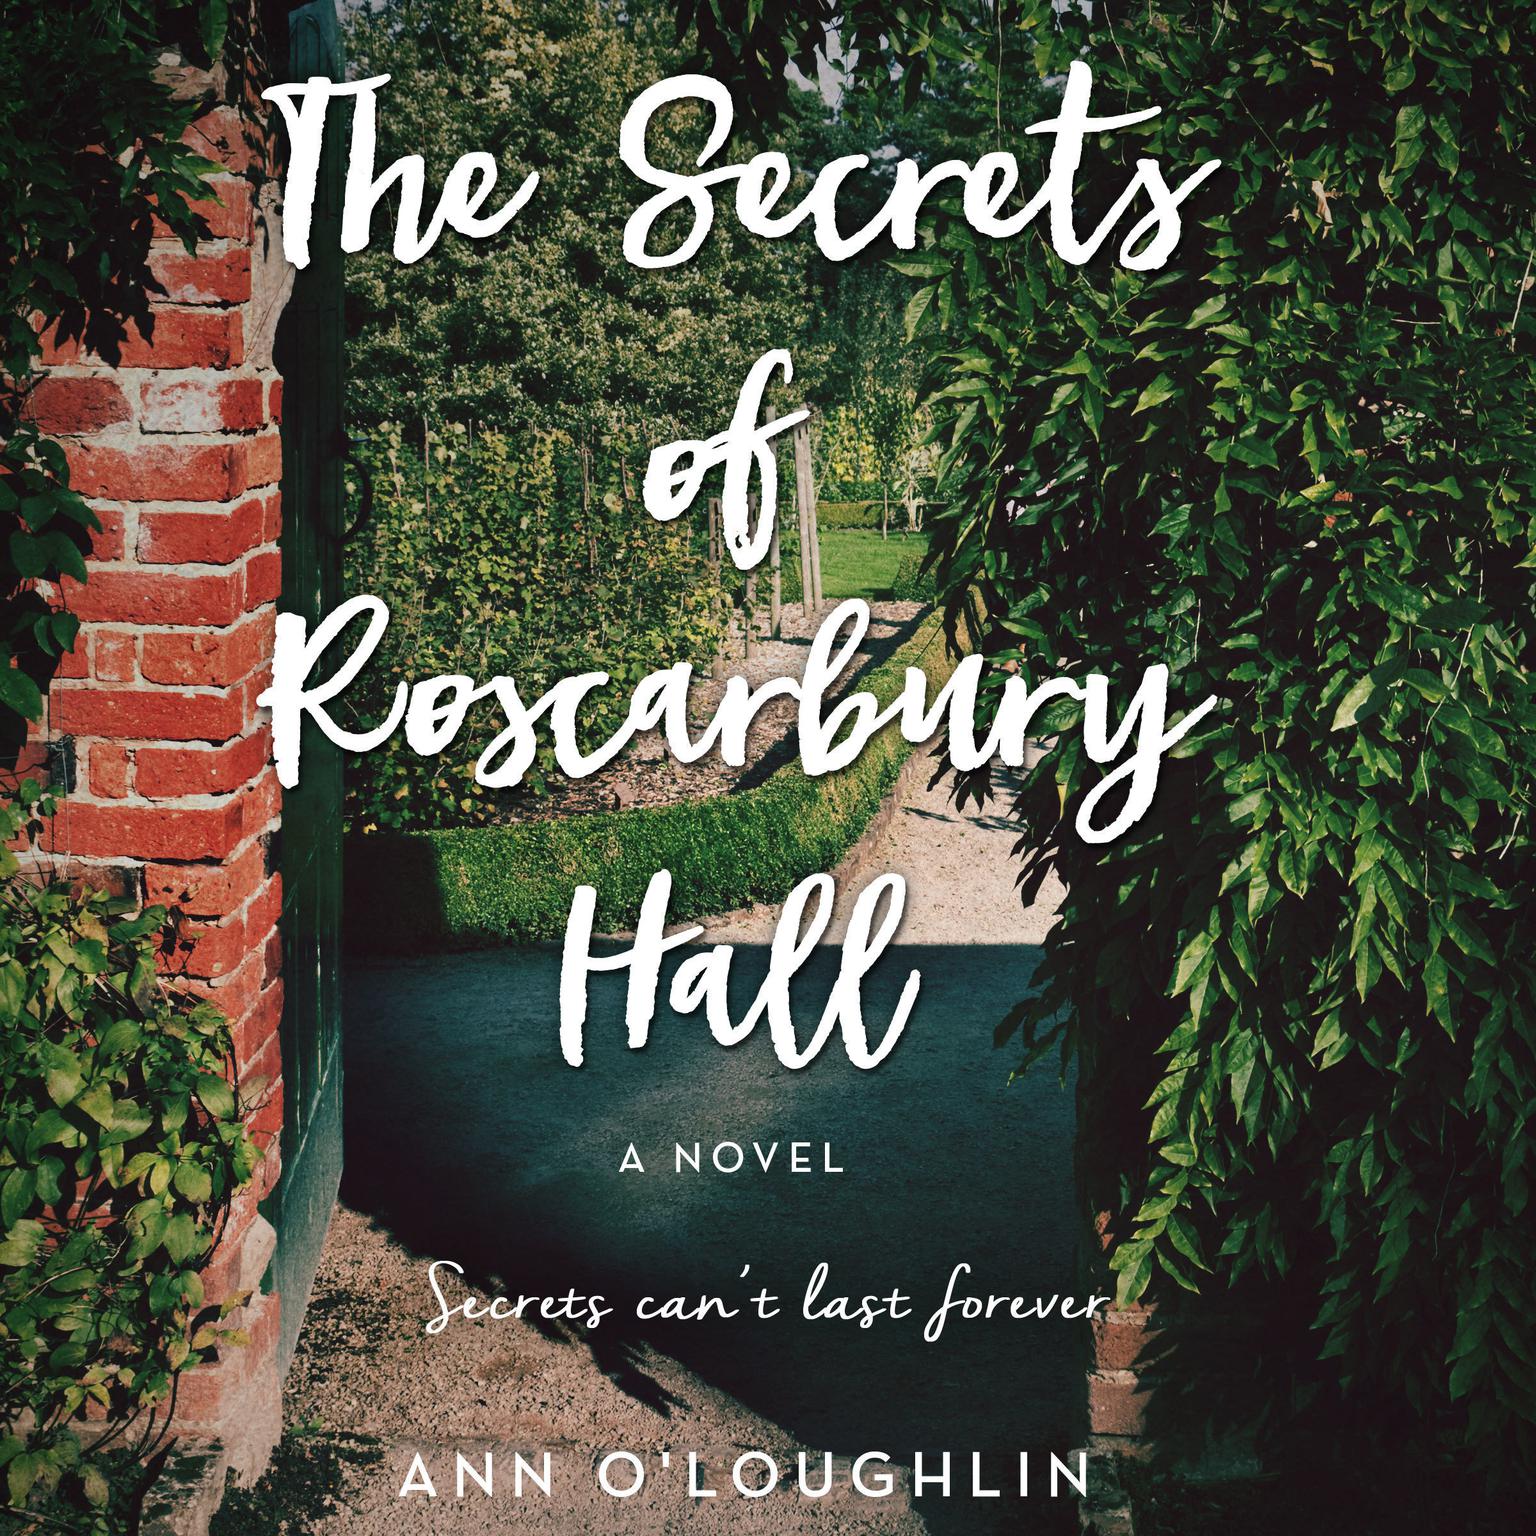 The Secrets of Roscarbury Hall: A Novel Audiobook, by Ann O'Loughlin